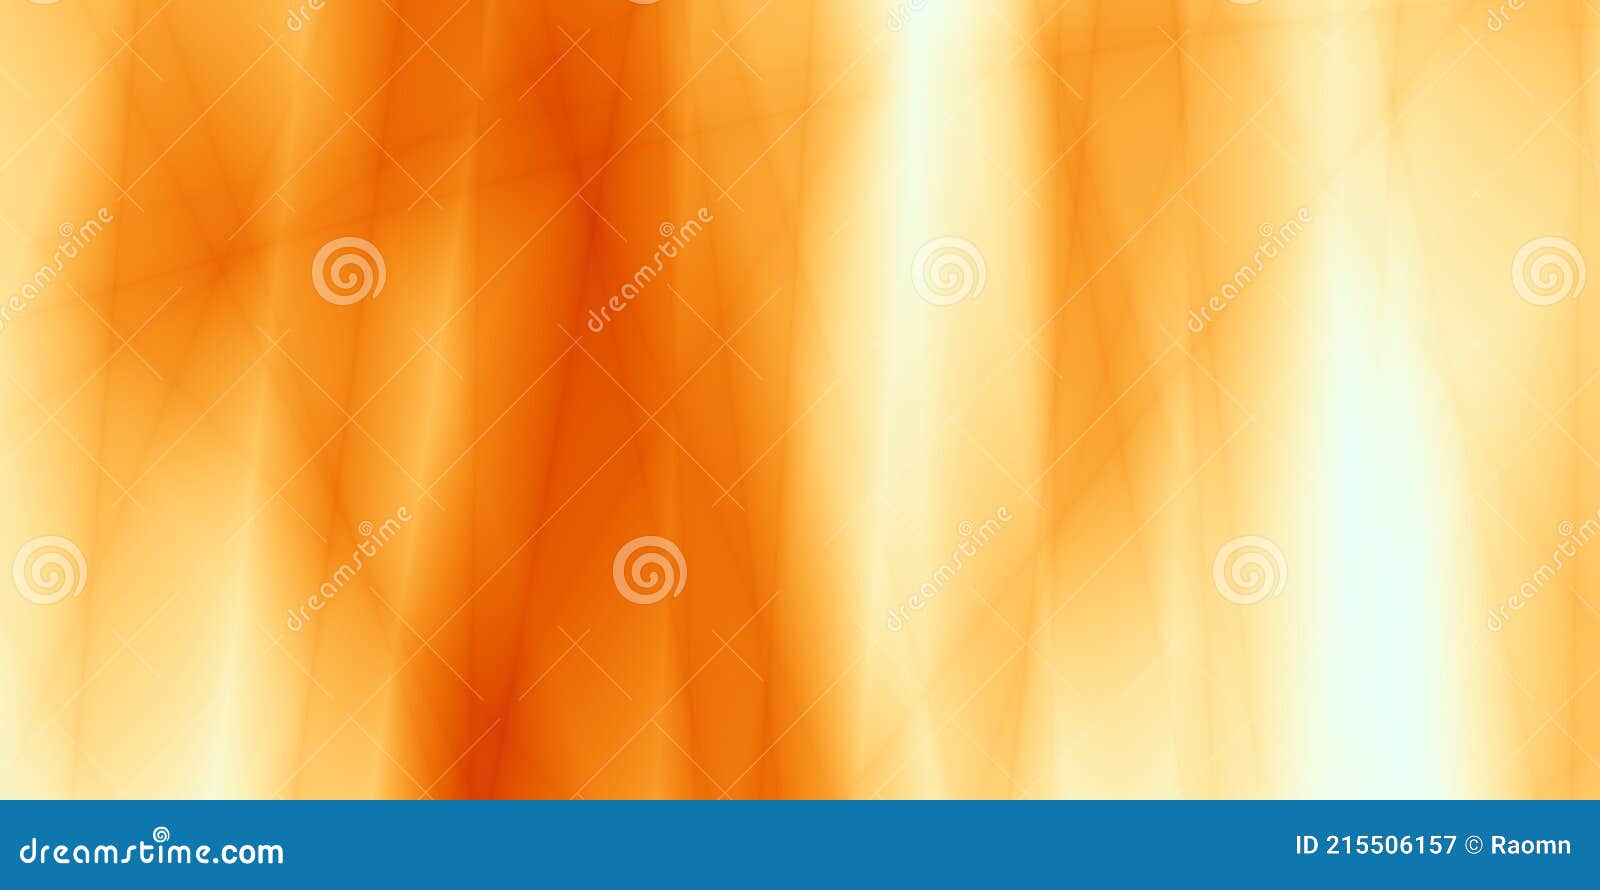 Hình nền thu màu cam là một lựa chọn tuyệt vời cho những ai muốn thể hiện tình yêu của họ với mùa thu và màu cam. Với những bức ảnh được chụp vào mùa thu với sắc cam đấu tranh và thanh lịch, những hình nền này sẽ mang đến cho bạn một không gian mới đầy cảm hứng và tràn đầy màu sắc. Hãy tải ngay những hình nền thu màu cam để làm mới không gian làm việc của bạn!